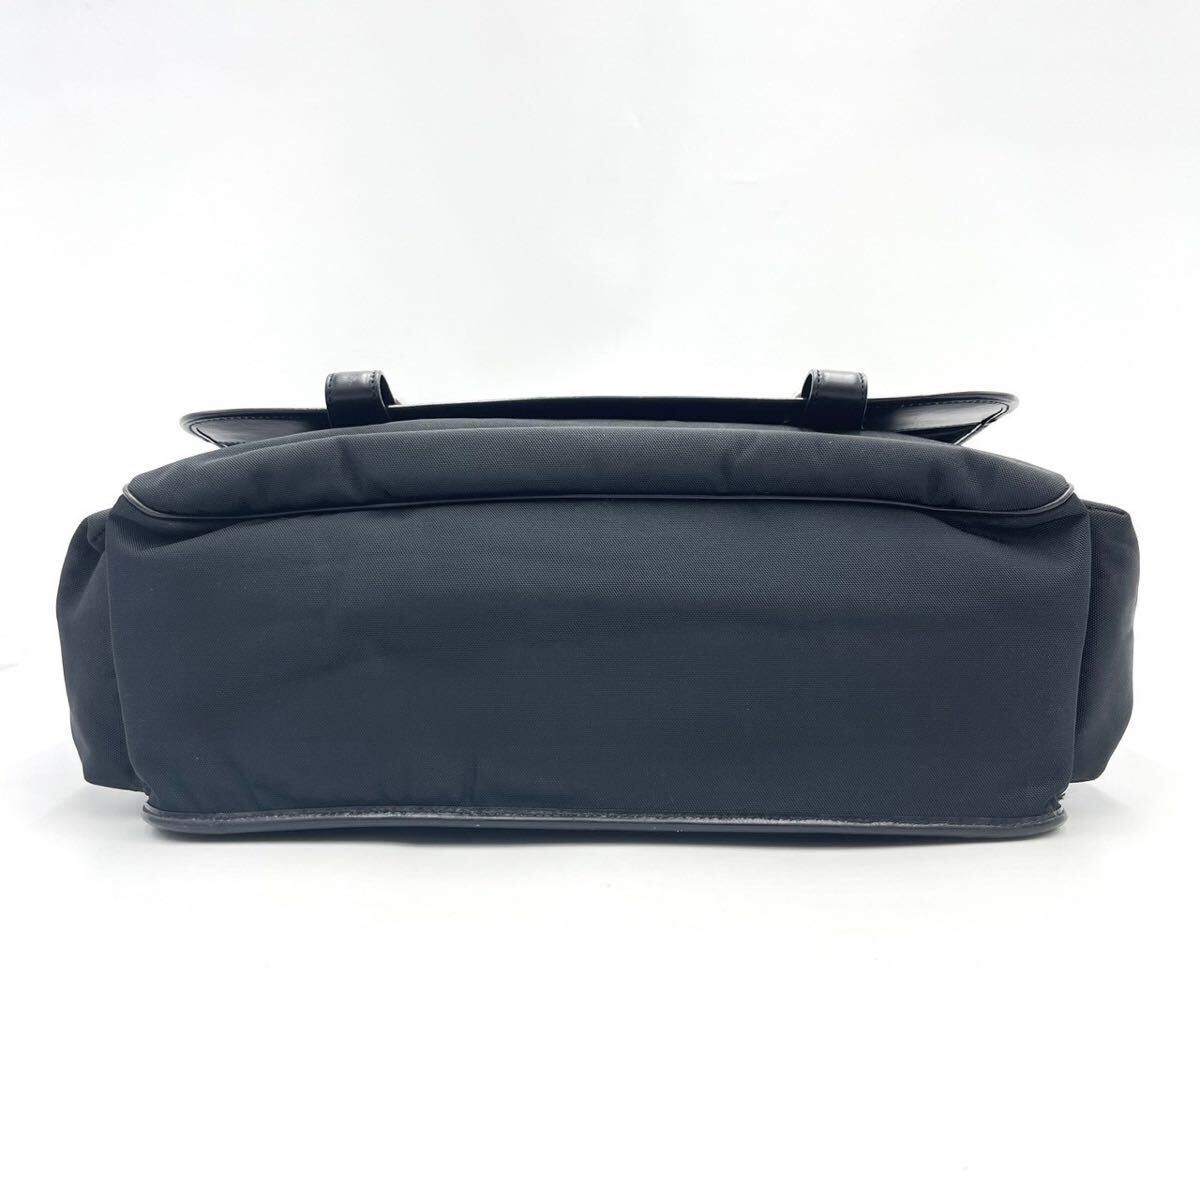 1 jpy ~/ modern times model * Dunhill dunhill shoulder bag messenger bag business bag high capacity A4 storage Logo nylon black black 